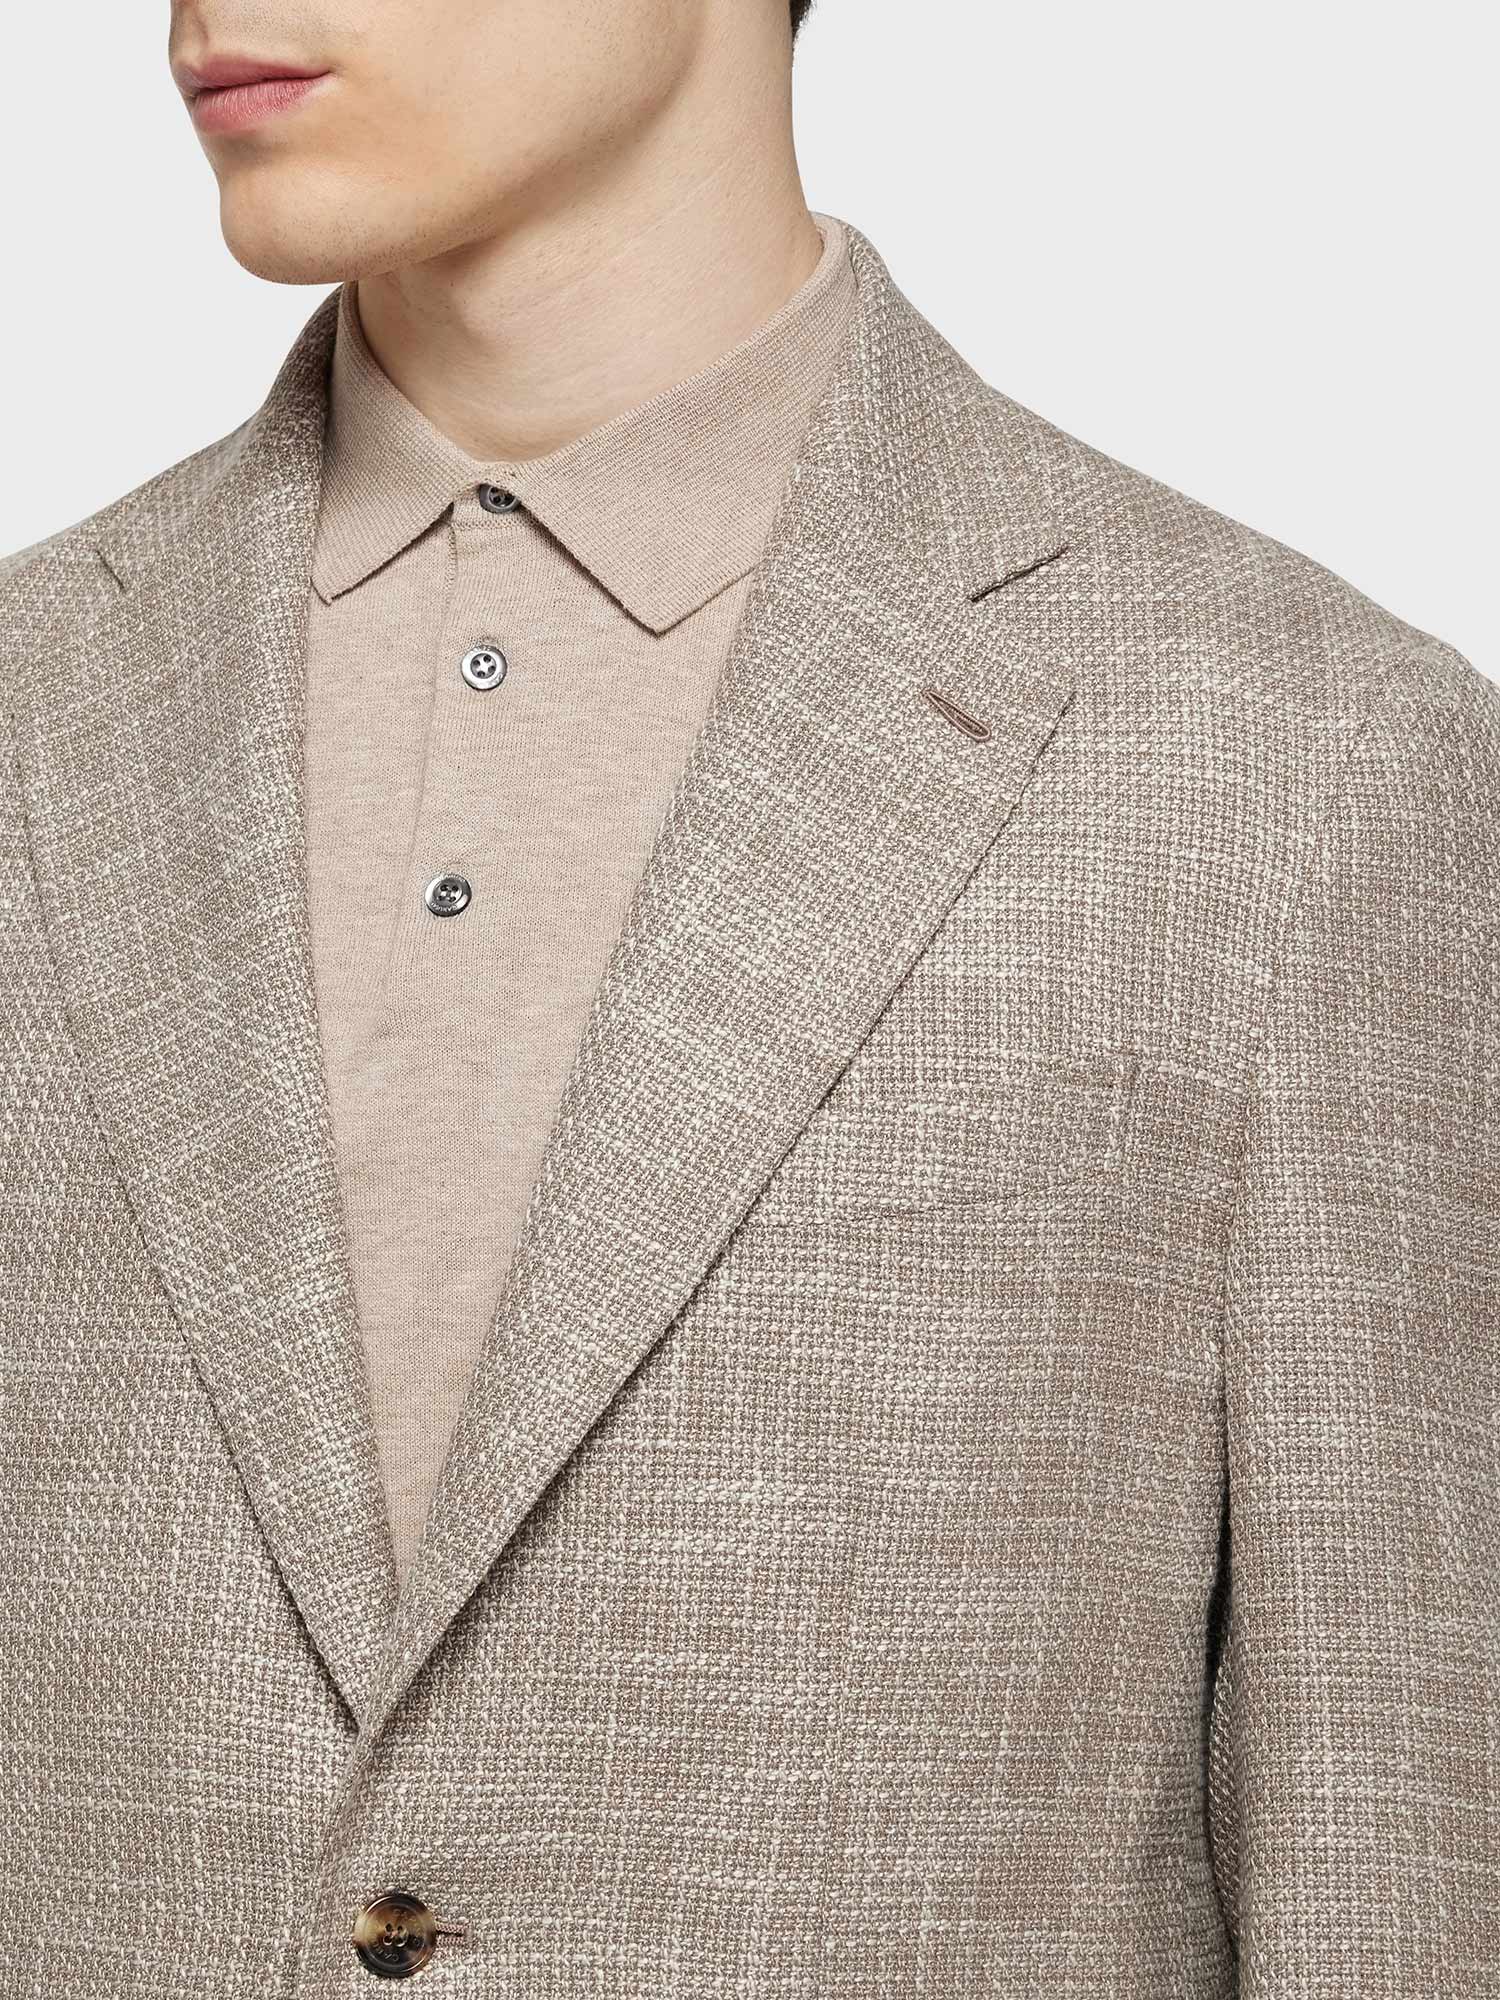 Caruso Menswear Abbigliamento Uomo Giacca butterfly in lana, seta e lino beige dettaglio